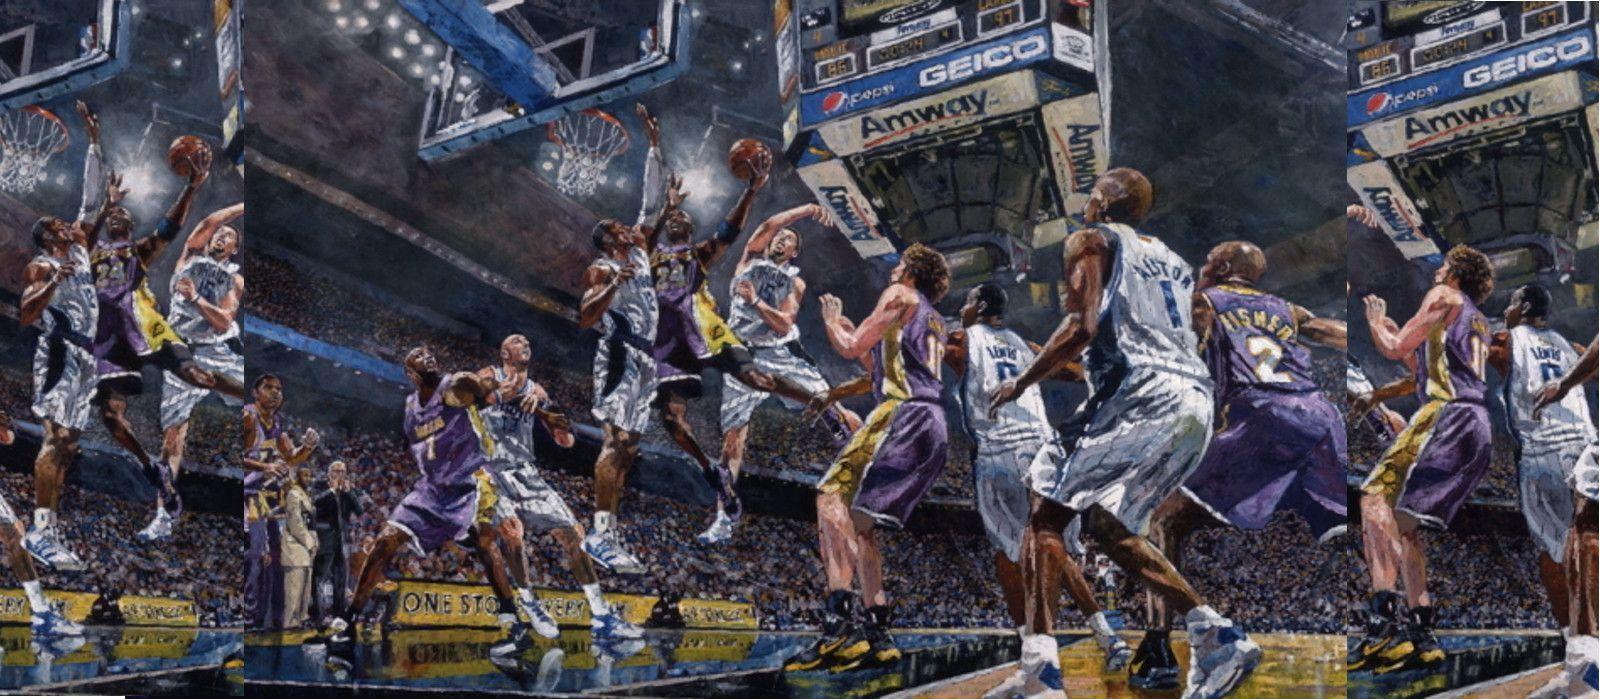 Blue Jersey Lakers Background. Lakerholics